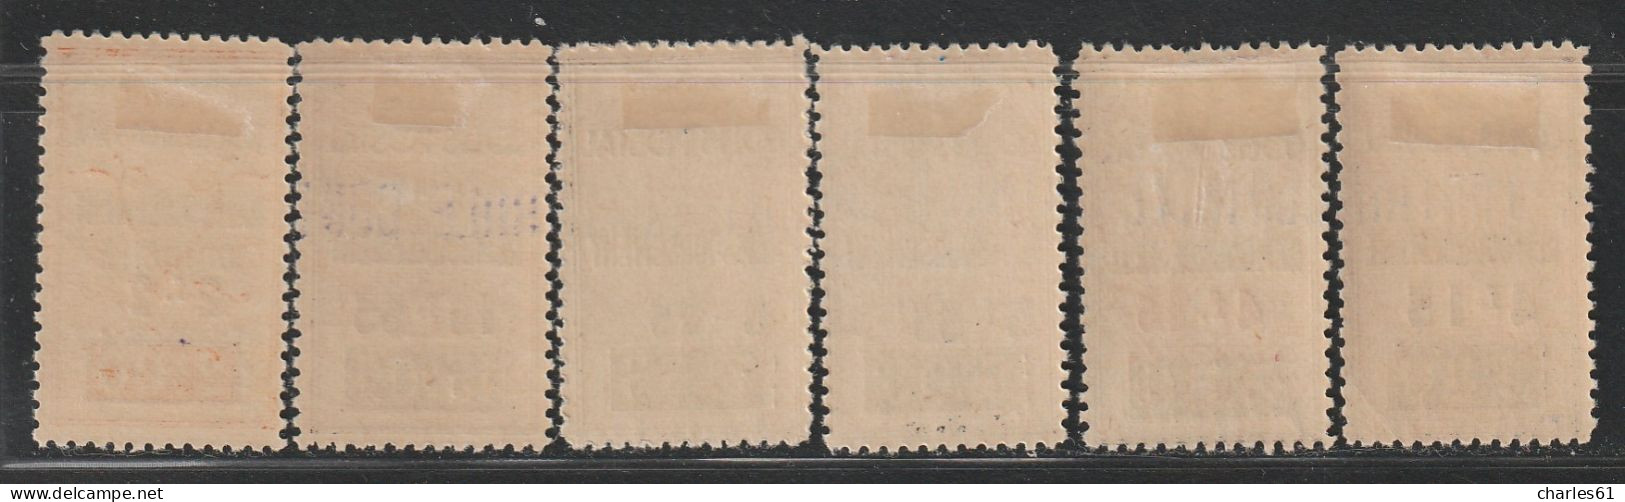 ALGERIE - COLIS POSTAUX - N°77+77a+78+79+81+82 * (1941) 6 Valeurs - Paketmarken